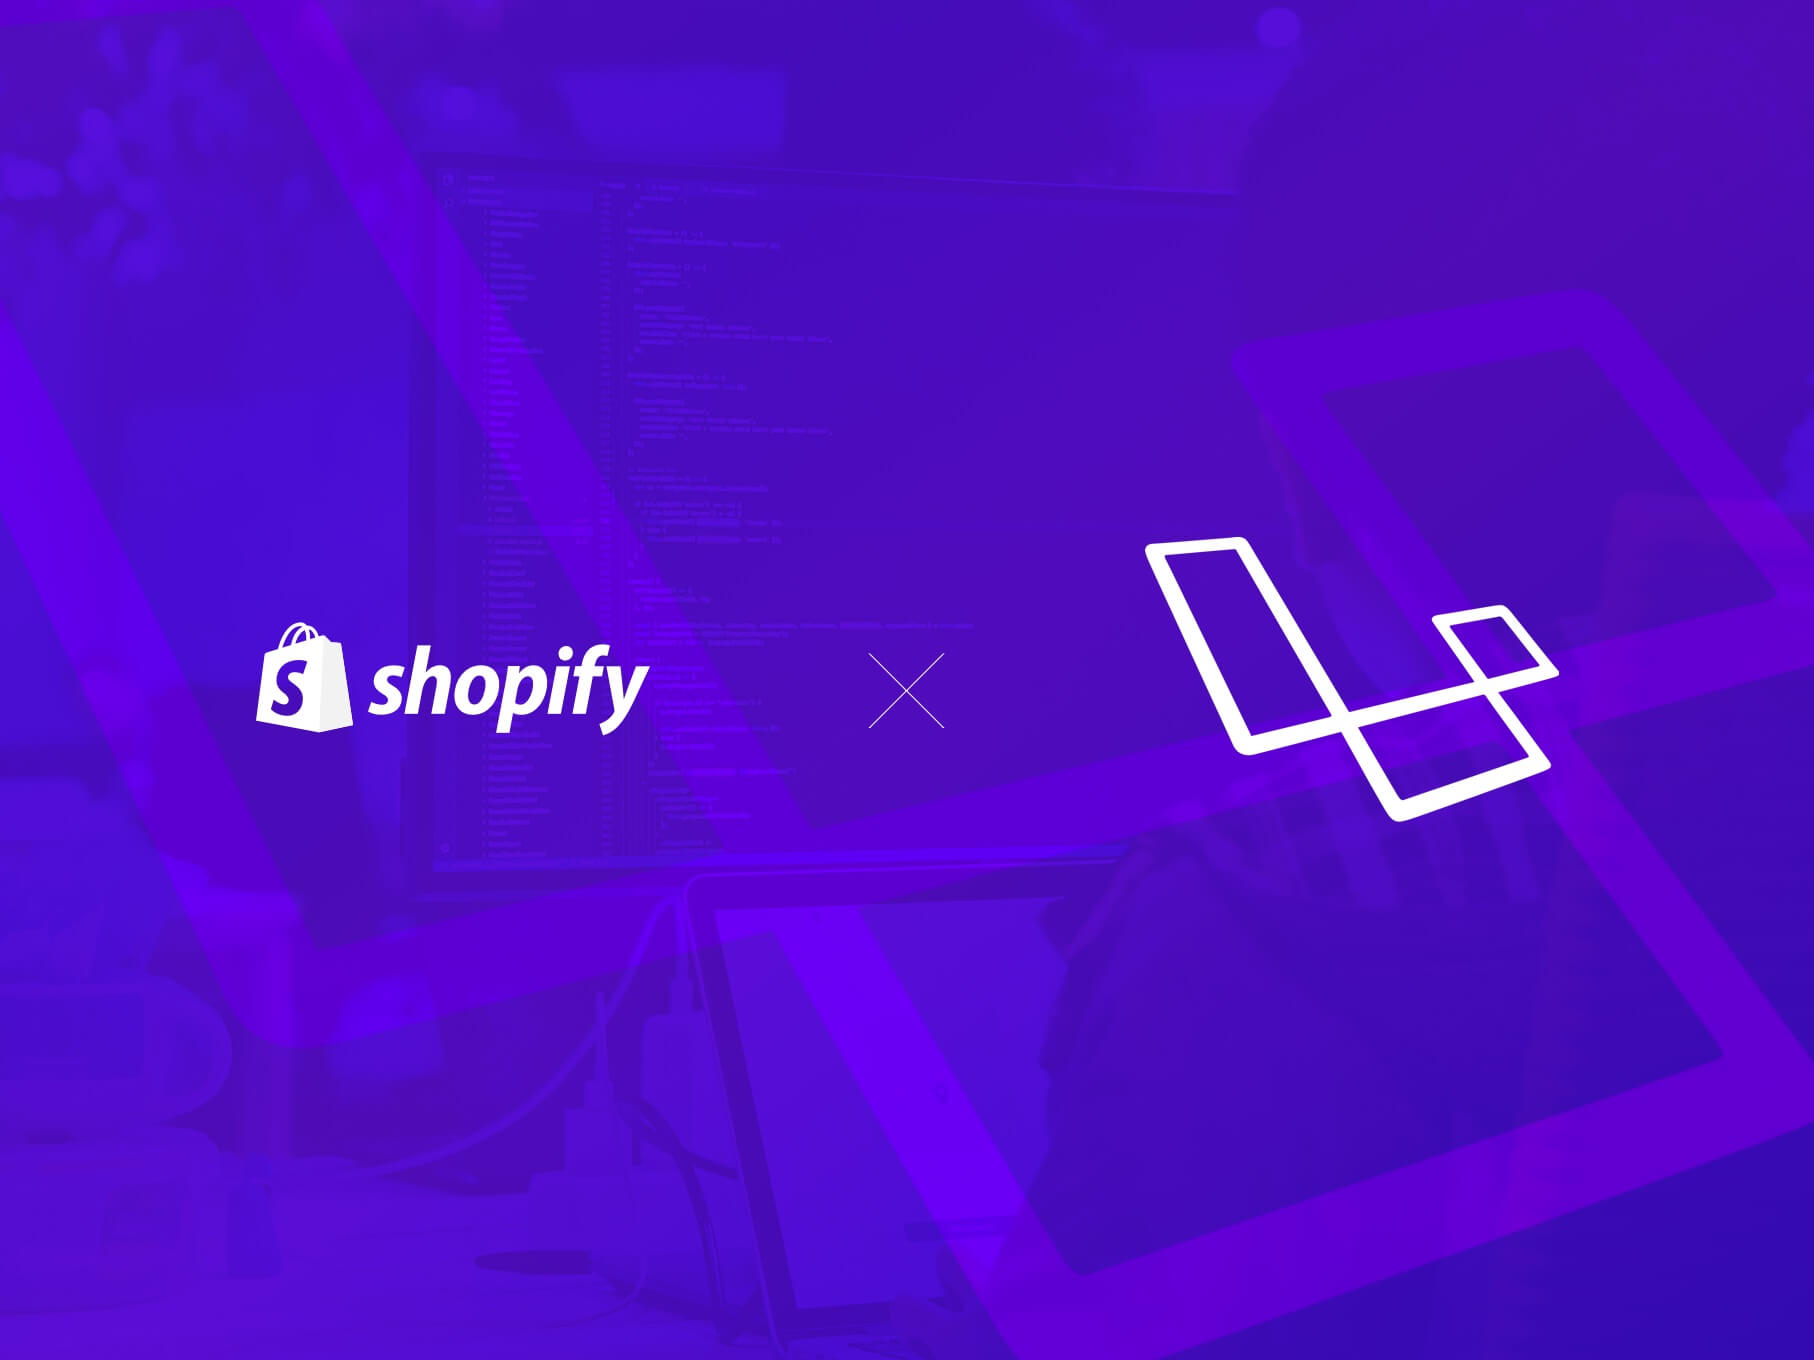 Shopify and Laravel logos on purple background